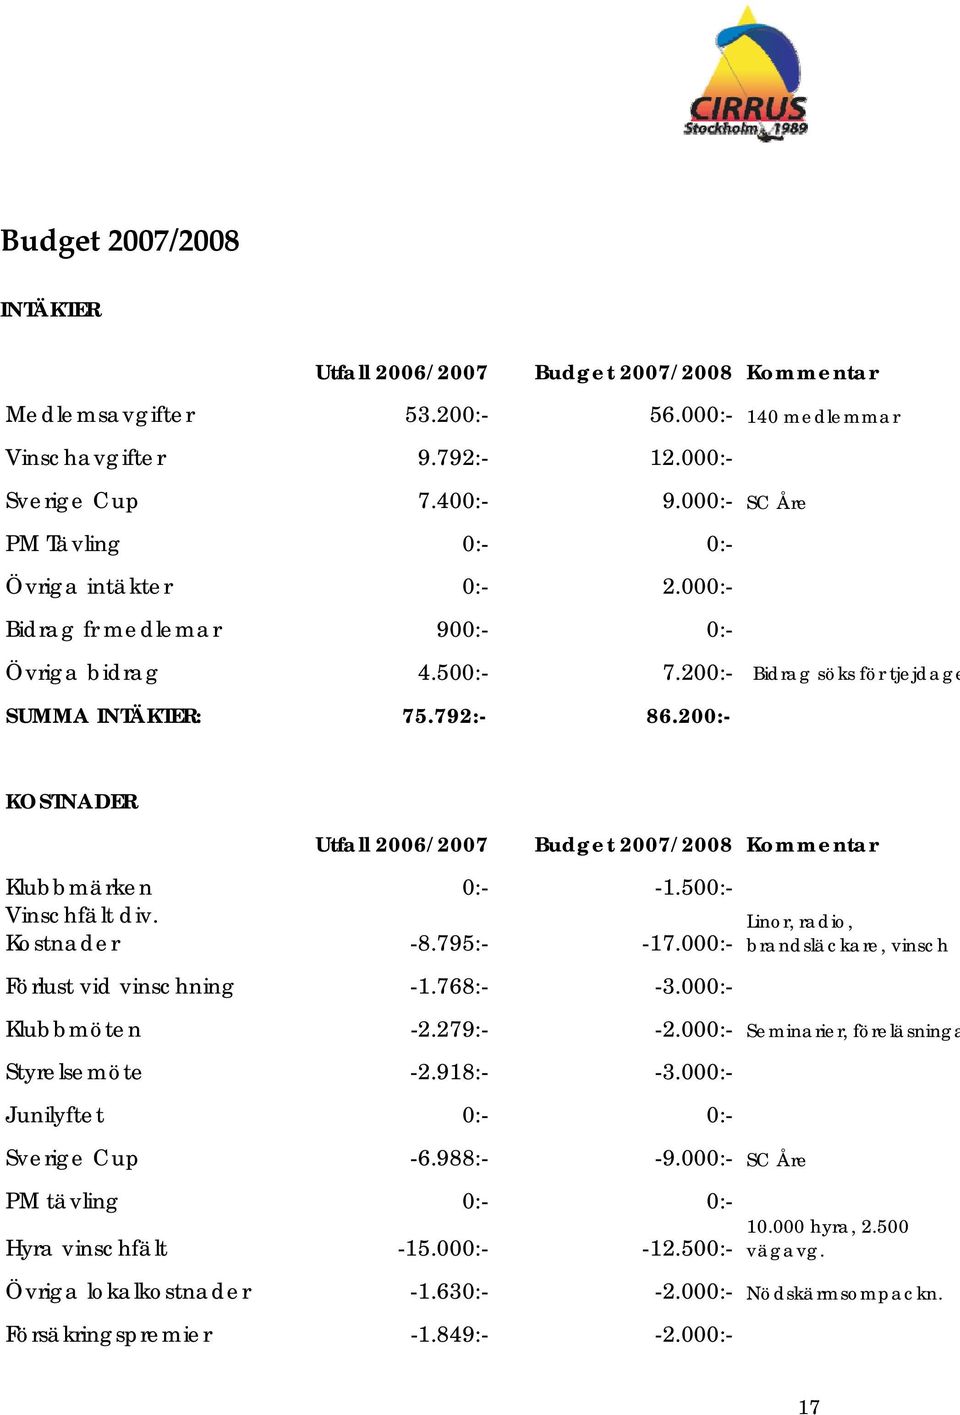 200:- KOSTNADER Utfall 2006/2007 Budget 2007/2008 Kommentar Klubbmärken 0:- -1.500:- Vinschfält div. Kostnader -8.795:- -17.000:- Förlust vid vinschning -1.768:- -3.